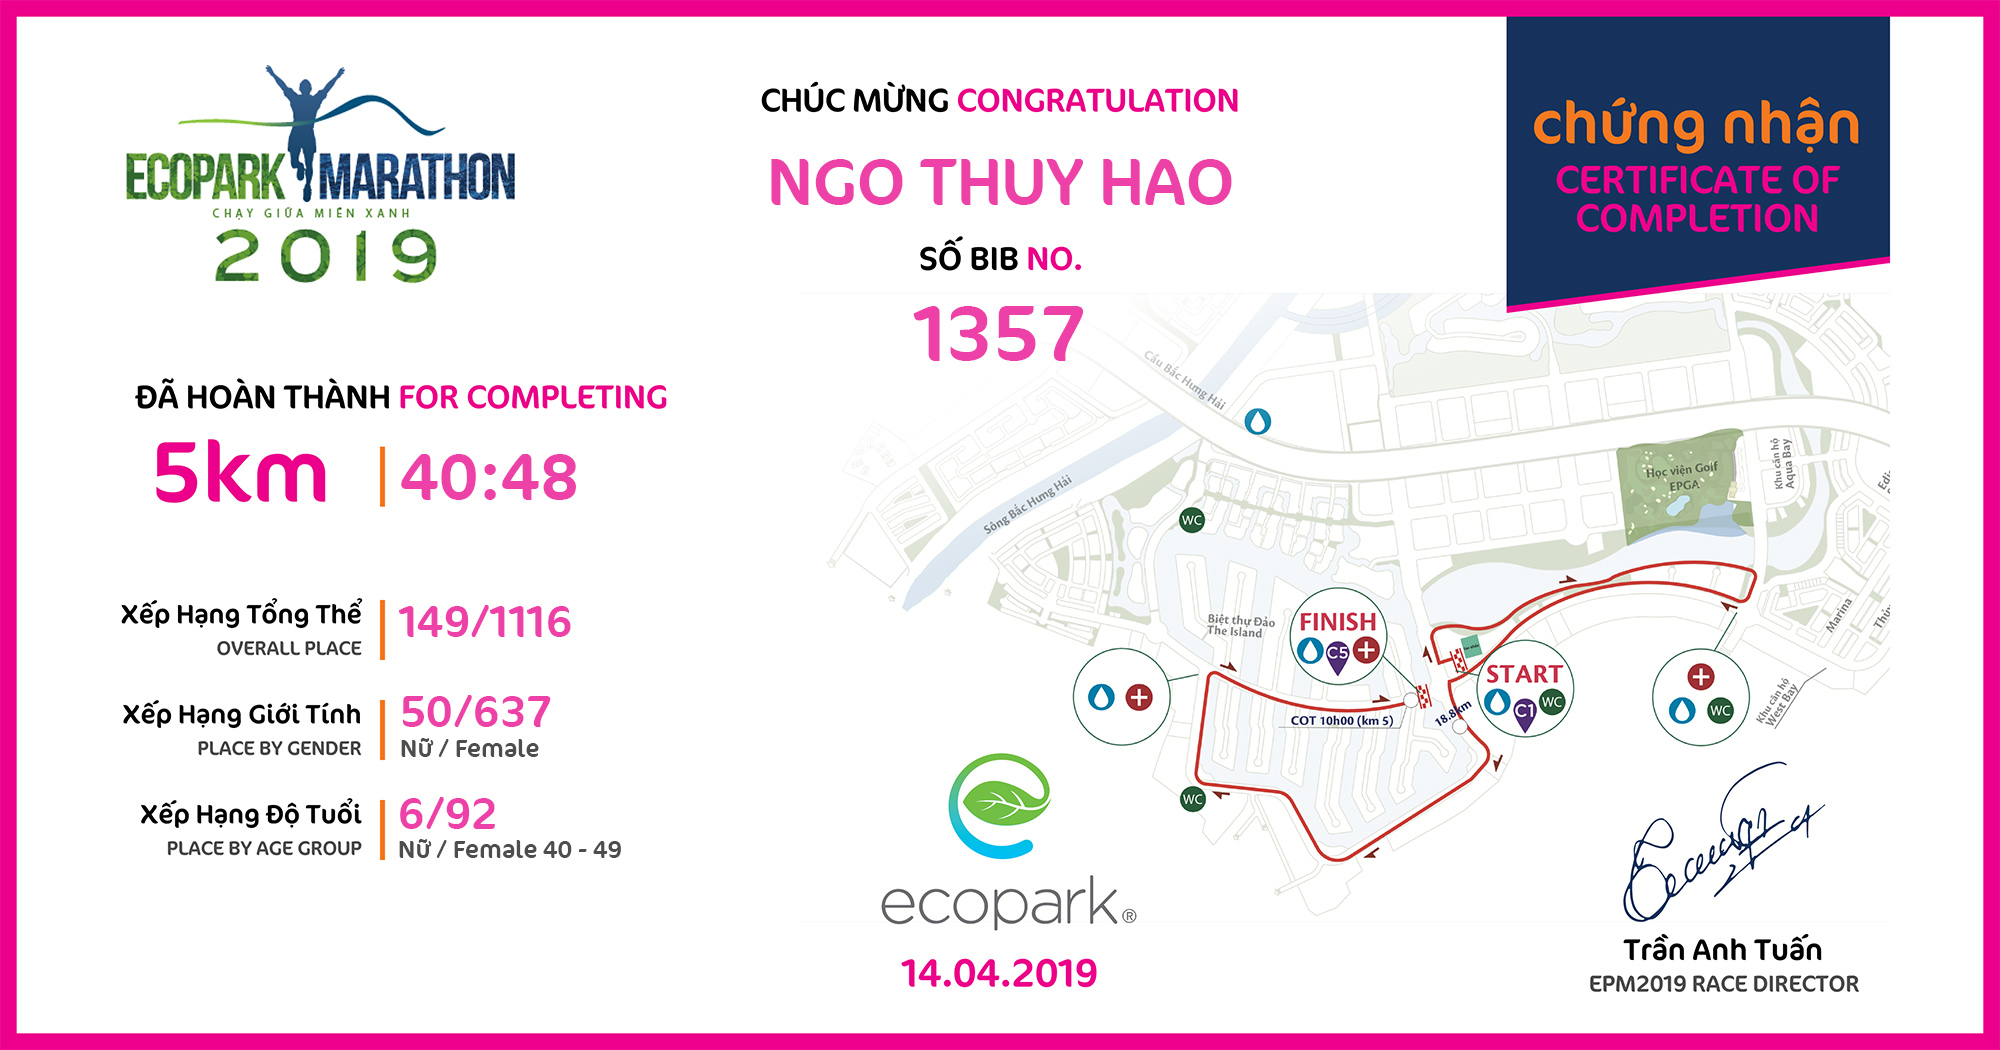 1357 - Ngo Thuy Hao